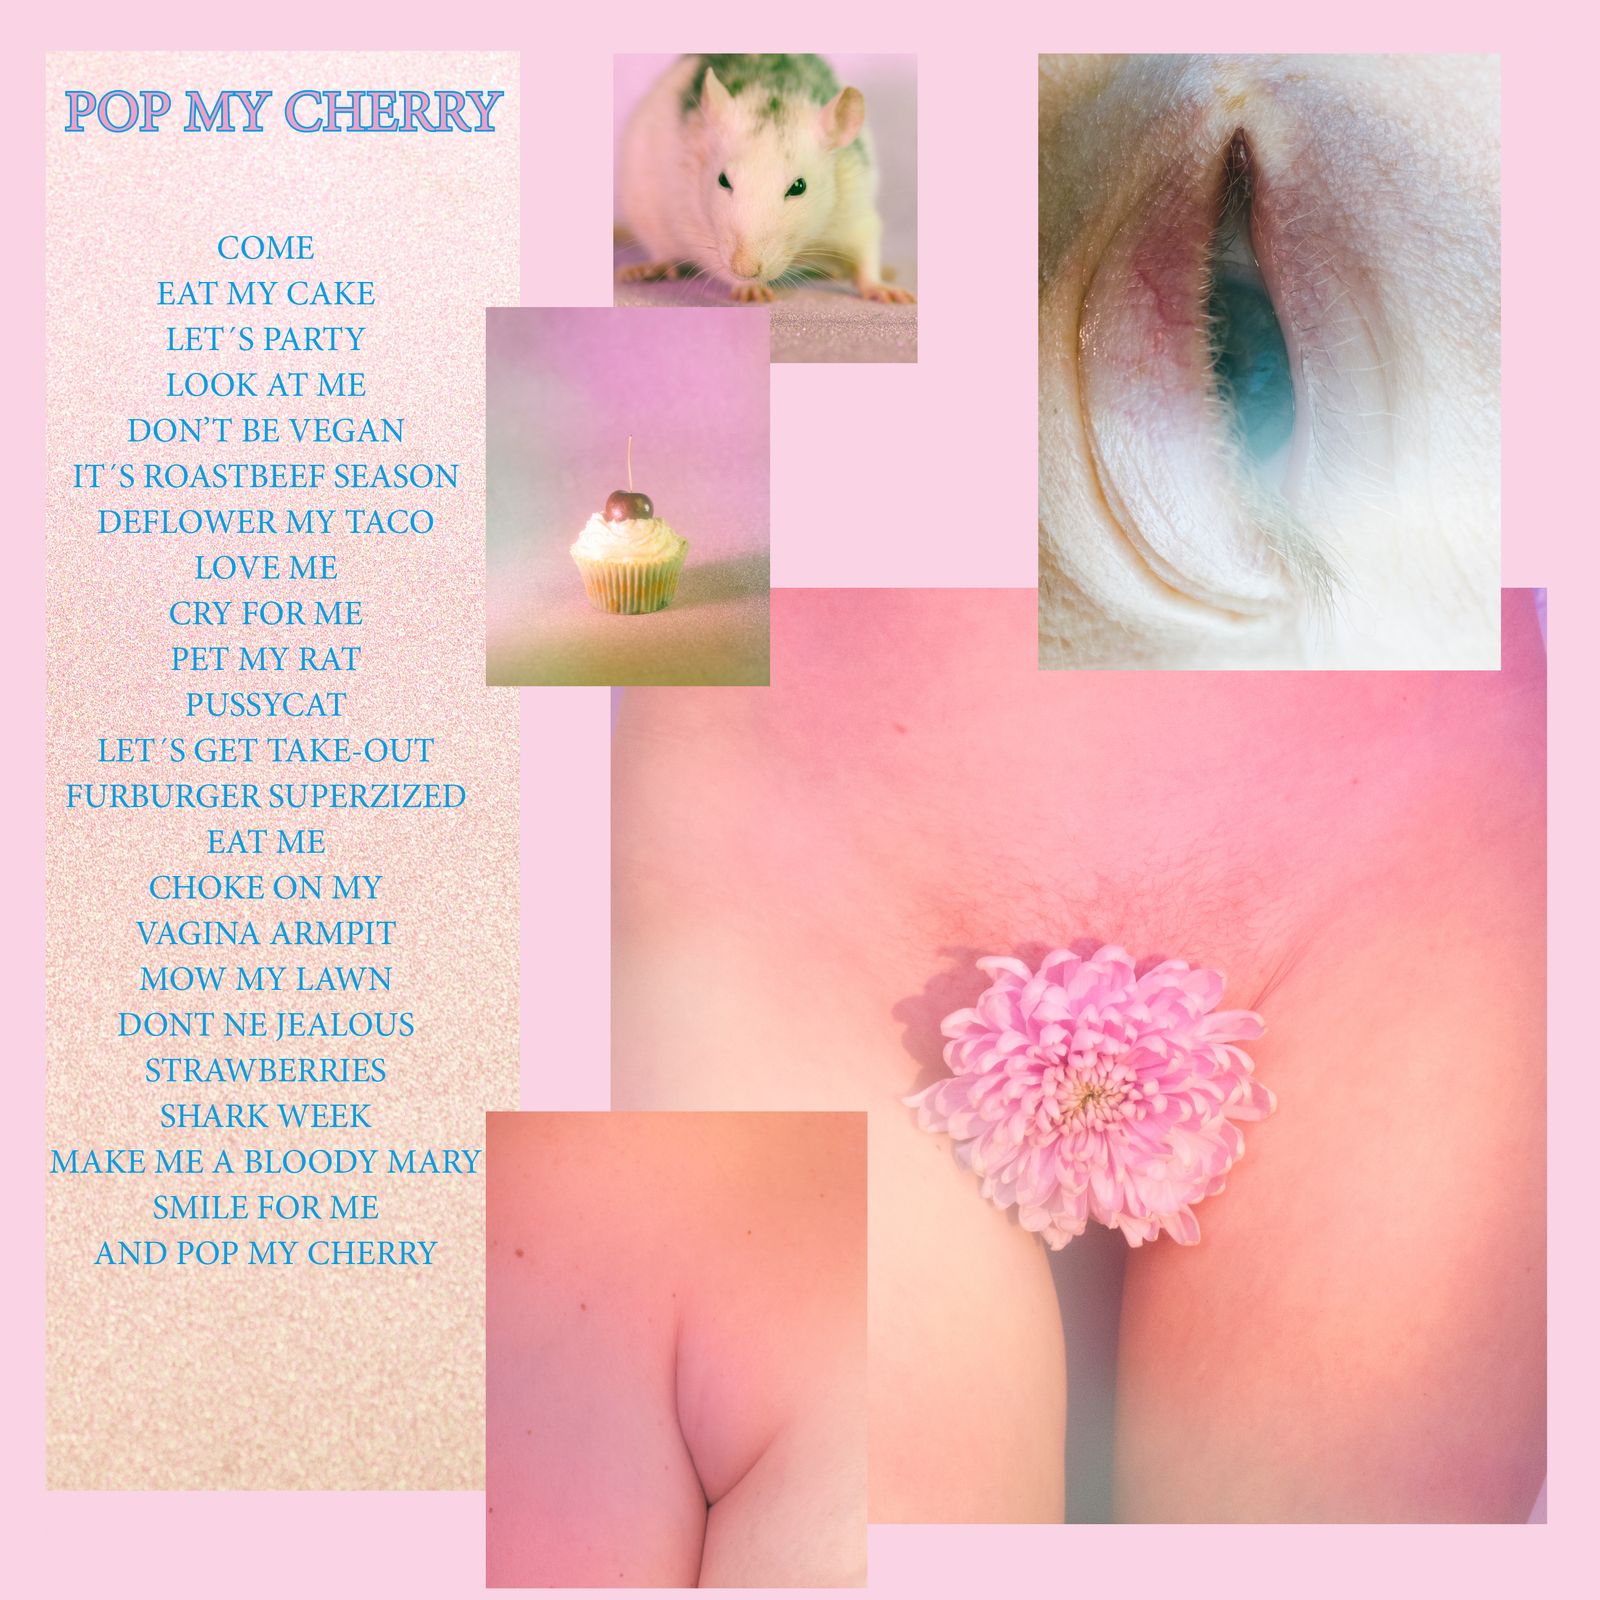 Best of Pop my cherry tumblr